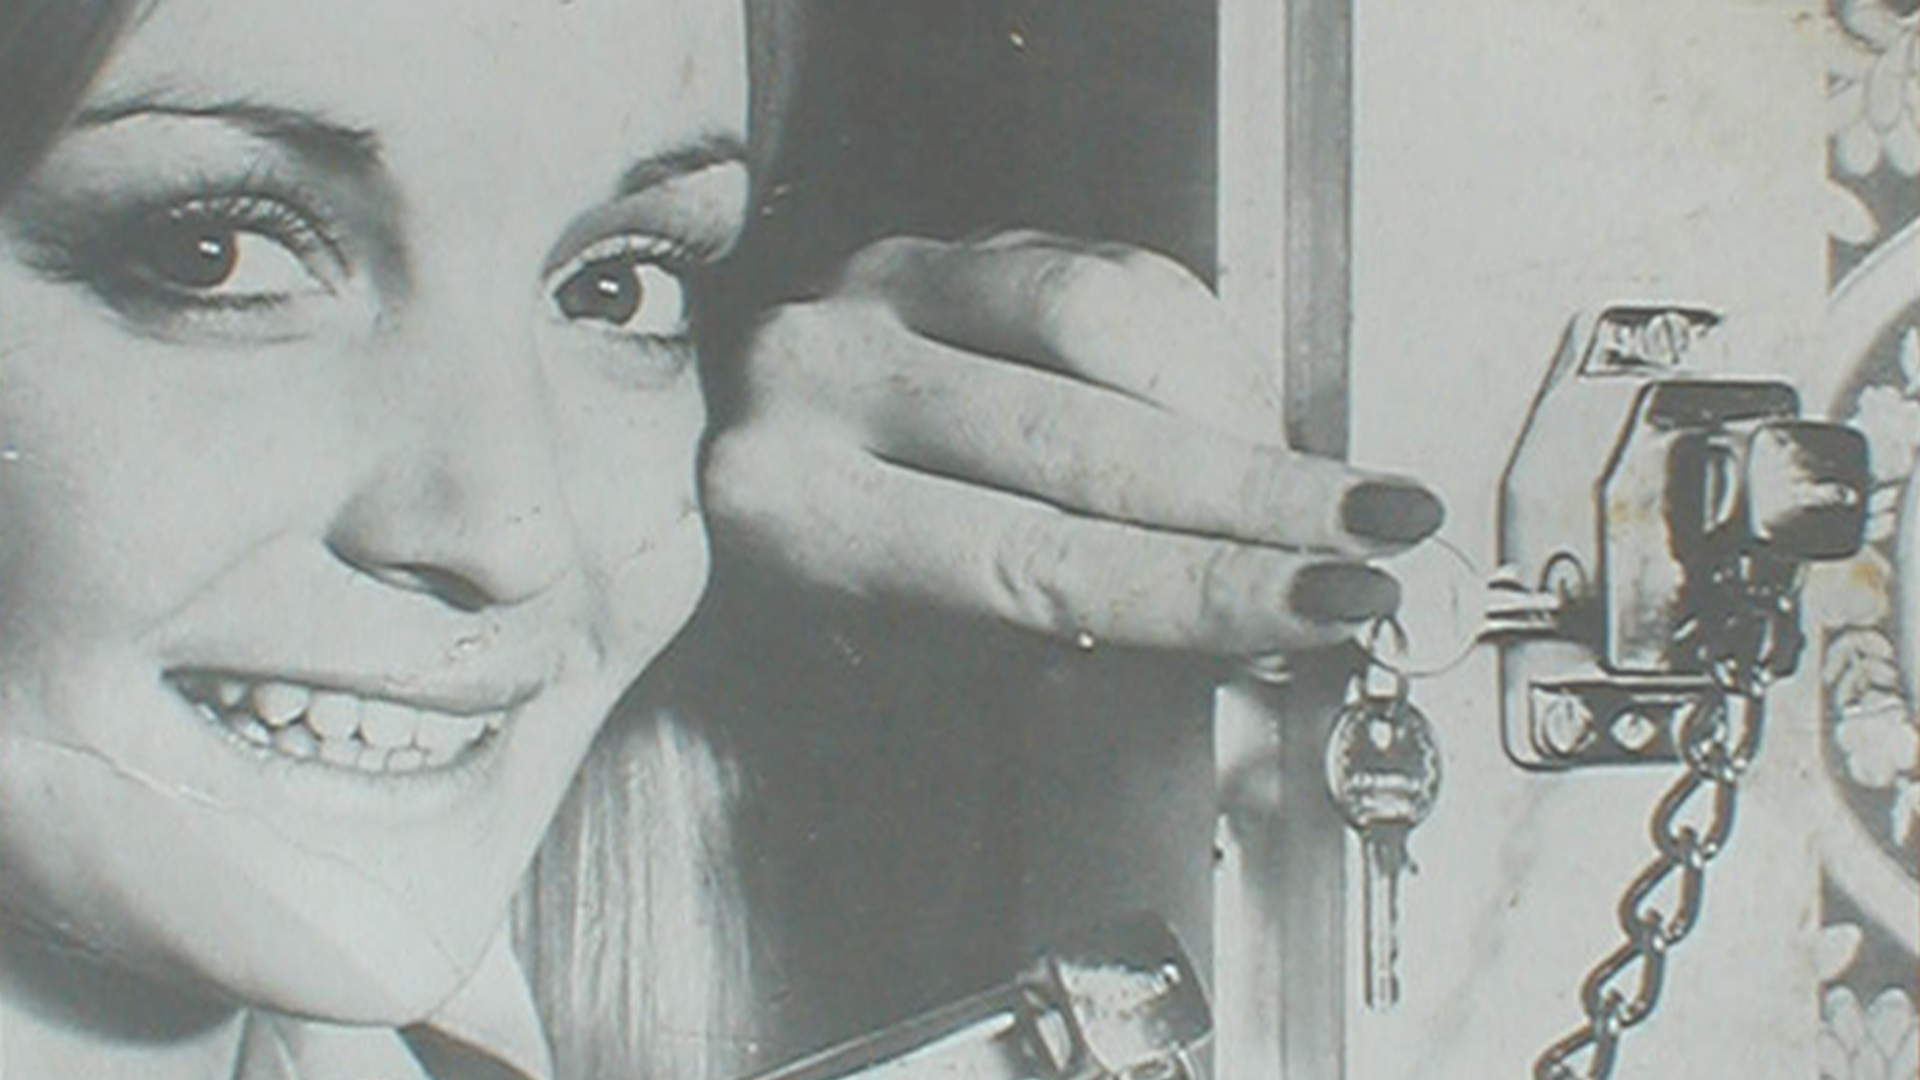 Una mujer cerrando una cerradura adicional para puerta © ABUS